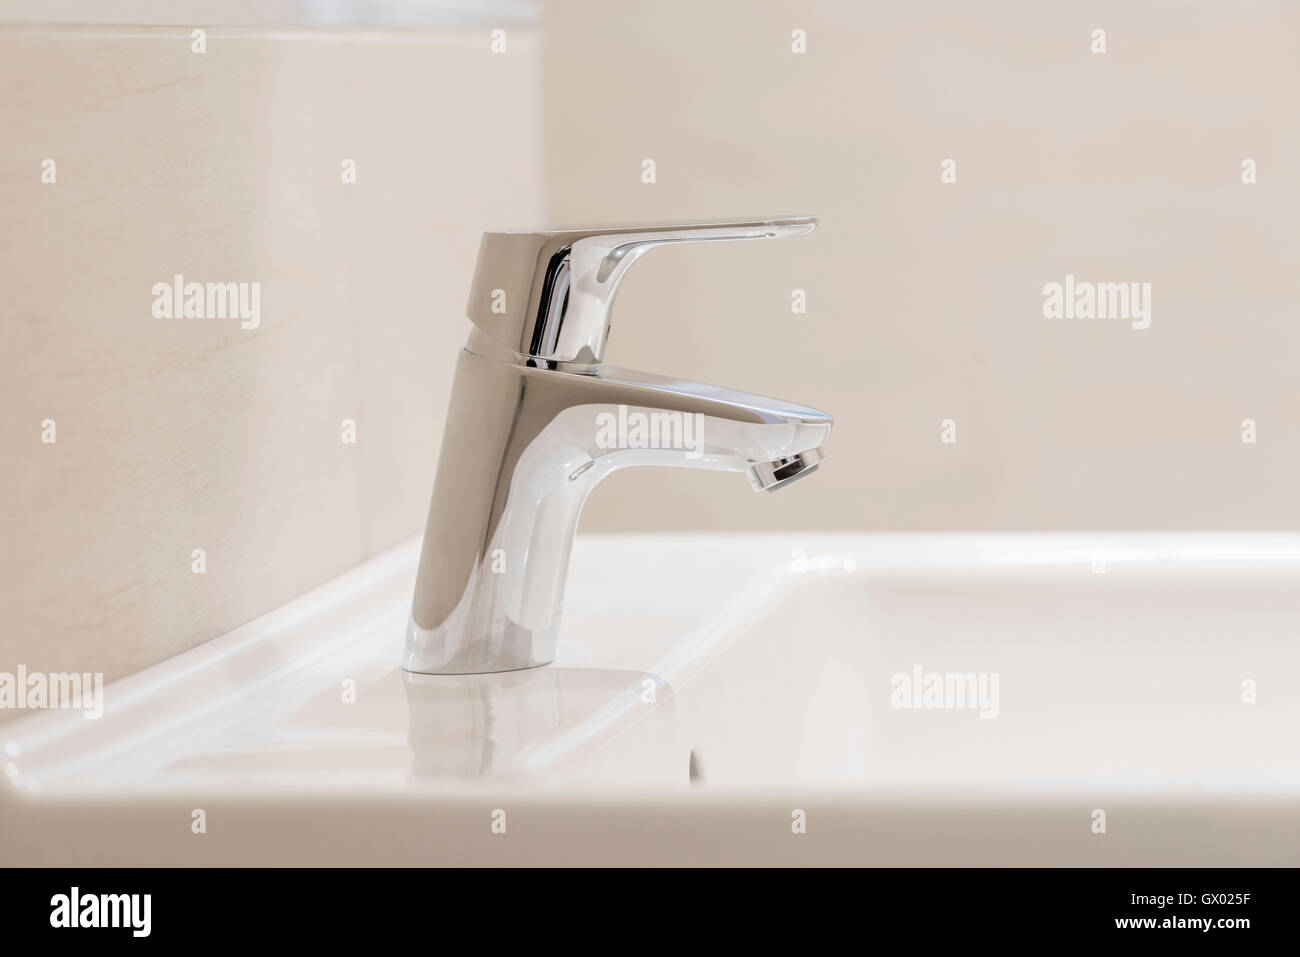 Chrome poli robinet mélangeur lavabo blanc sur dans la salle de bains Banque D'Images